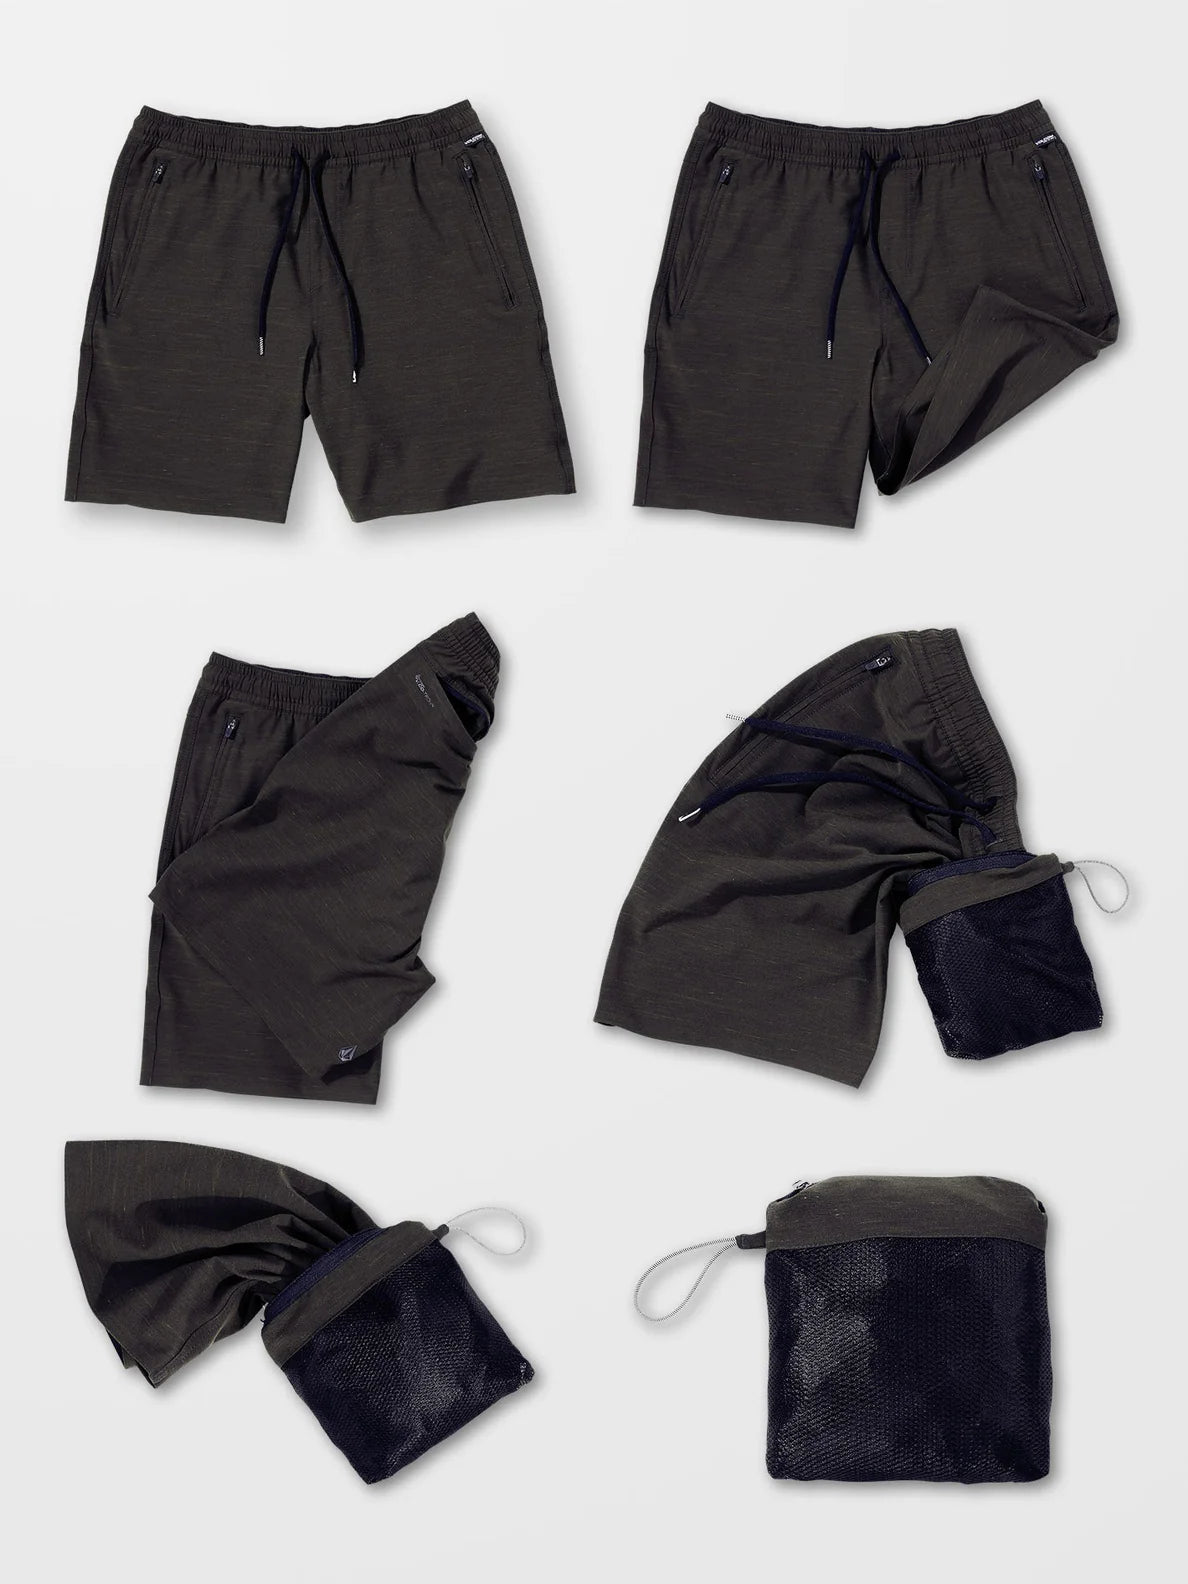 Pantalon Corto Volcom Wrecpack Hybrid 19" - Black | Pantalones cortos de Hombre | Todos los pantalones de hombre | Volcom Shop | surfdevils.com